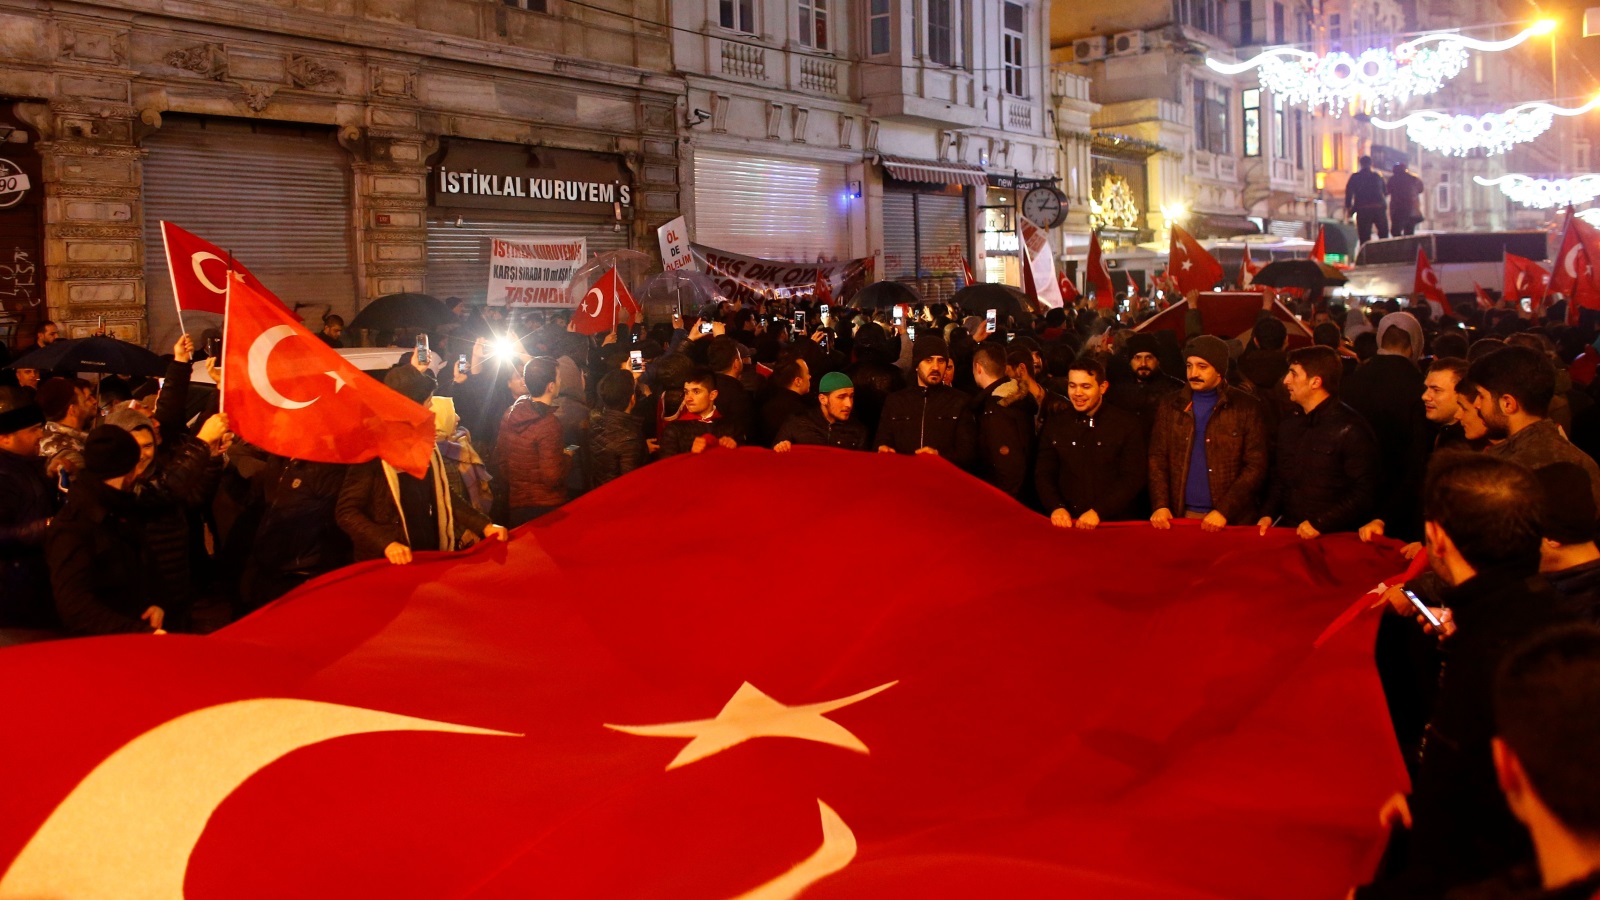 ‪متظاهرون أتراك يحتجون حاملين علم بلادهم أمام مقر القنصلية الهولندية في اسطنبول‬  متظاهرون أتراك يحتجون حاملين علم بلادهم أمام مقر القنصلية الهولندية في اسطنبول (رويترز)